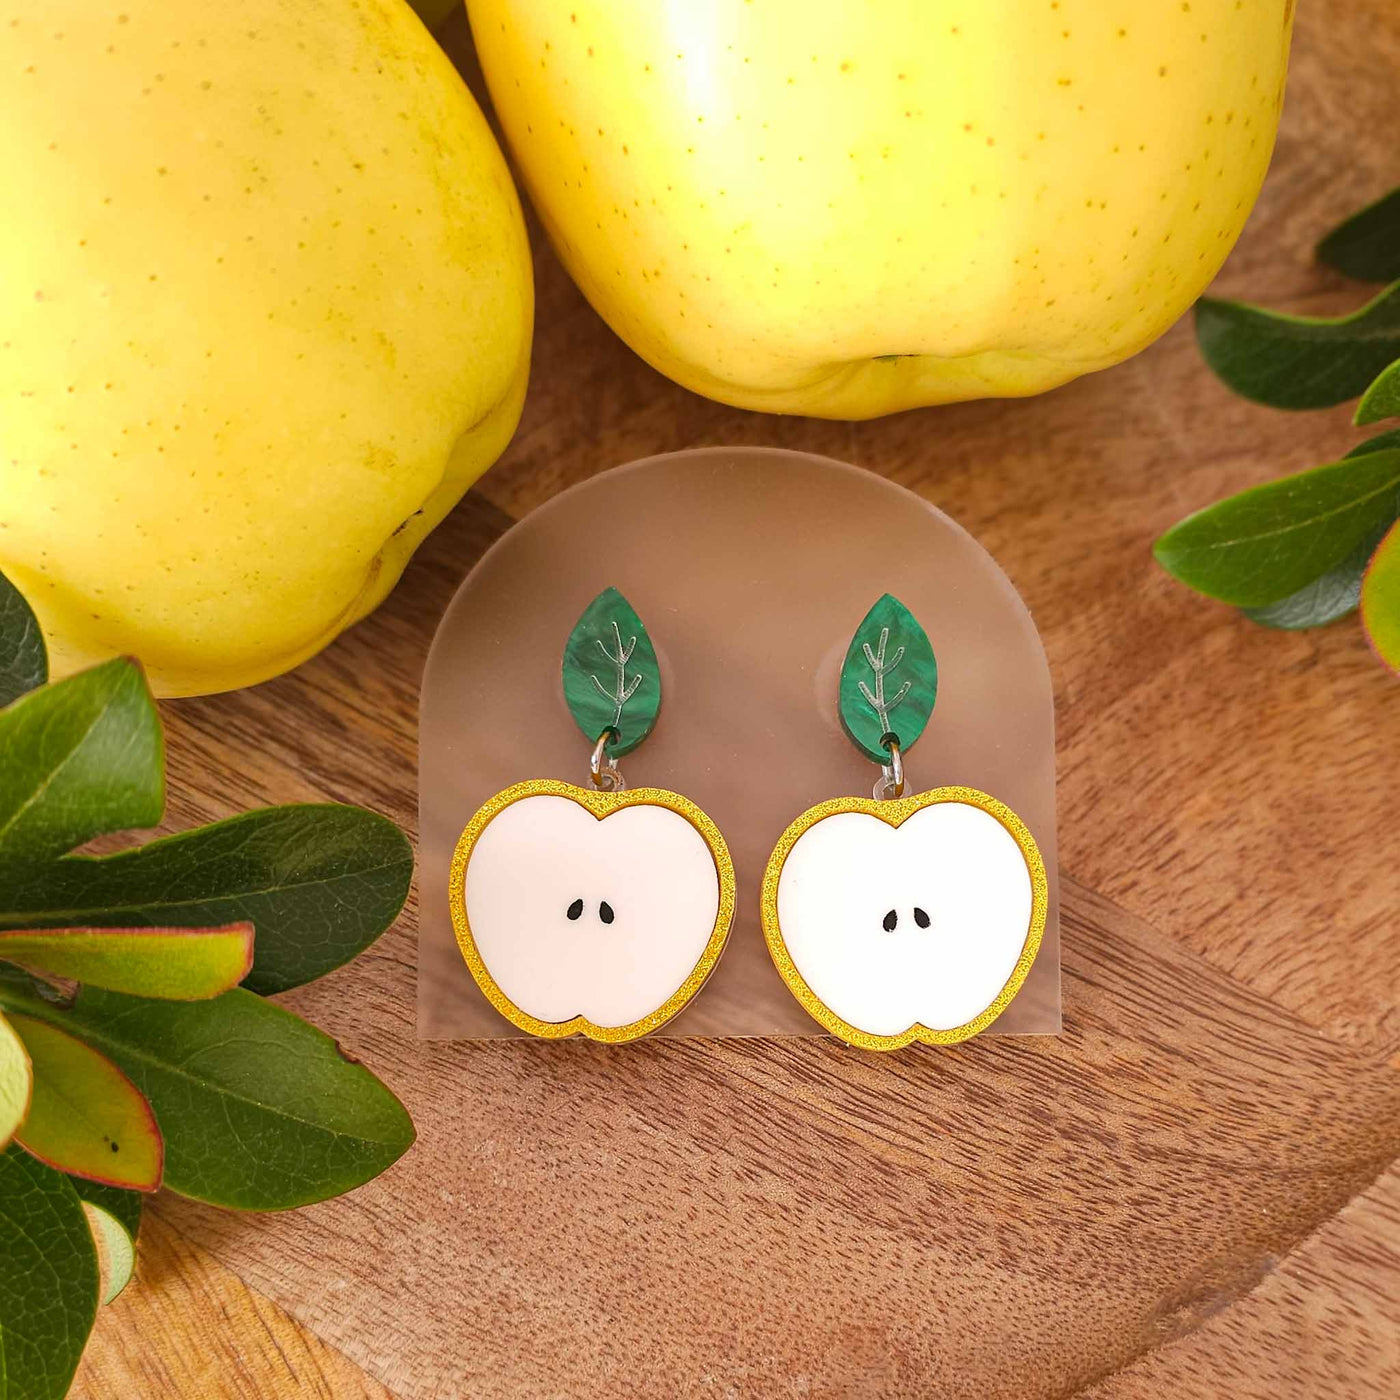 Golden Delicious Apple Earrings